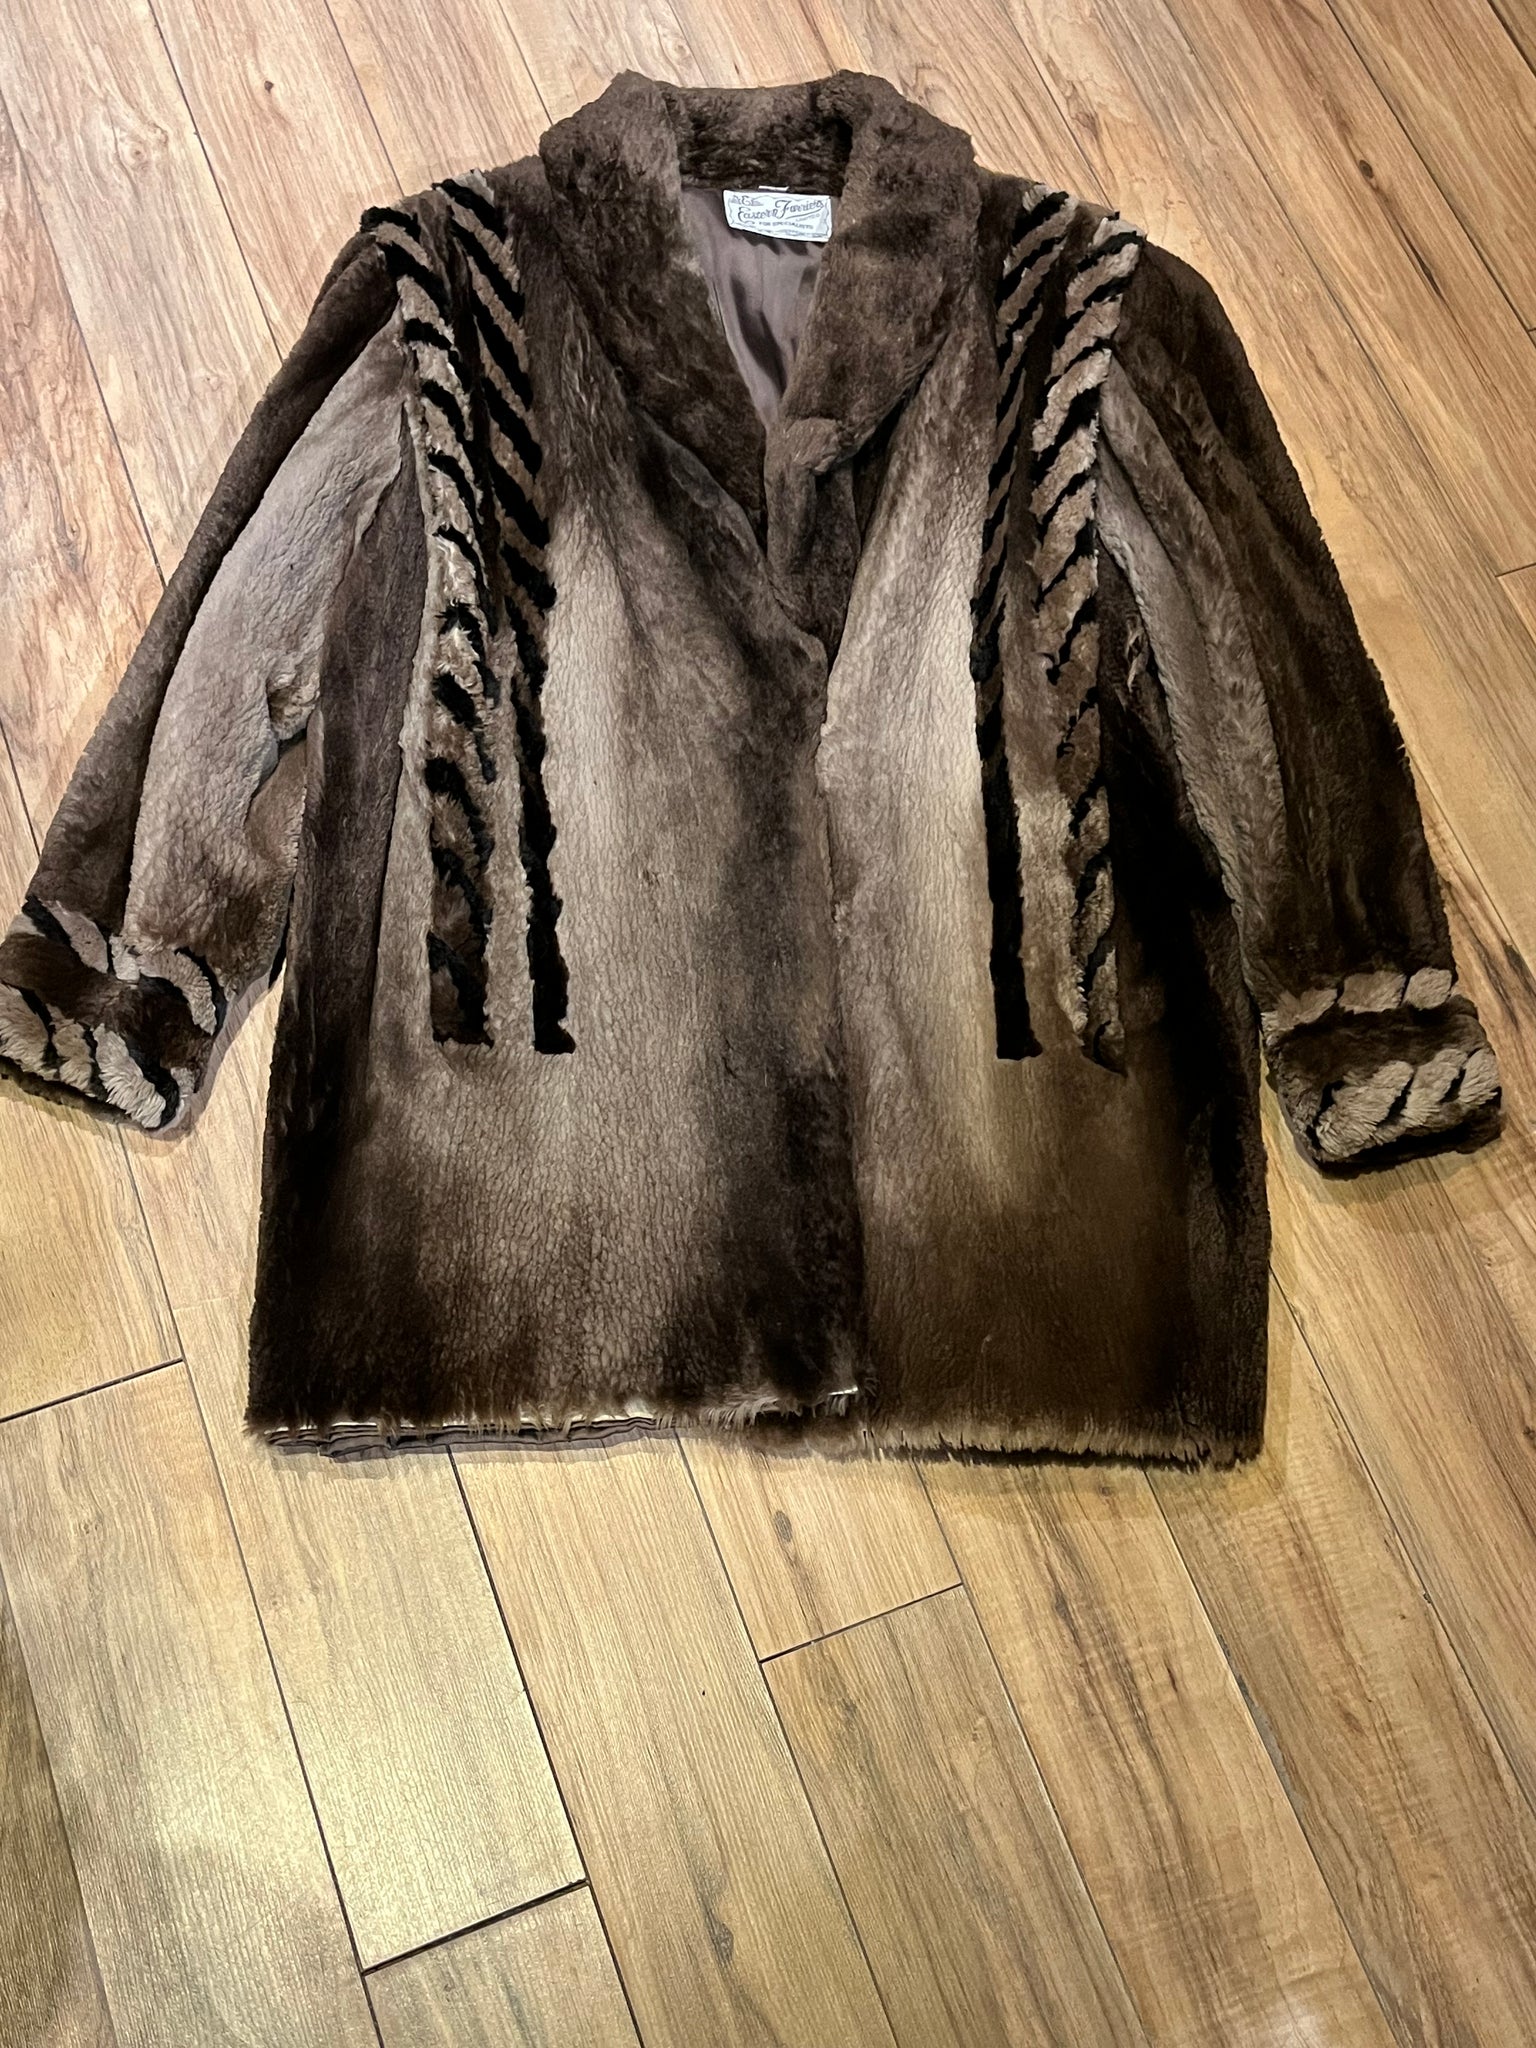 Vintage Eastern Furriers Fur Coat, Made in Canada – KingsPIER vintage